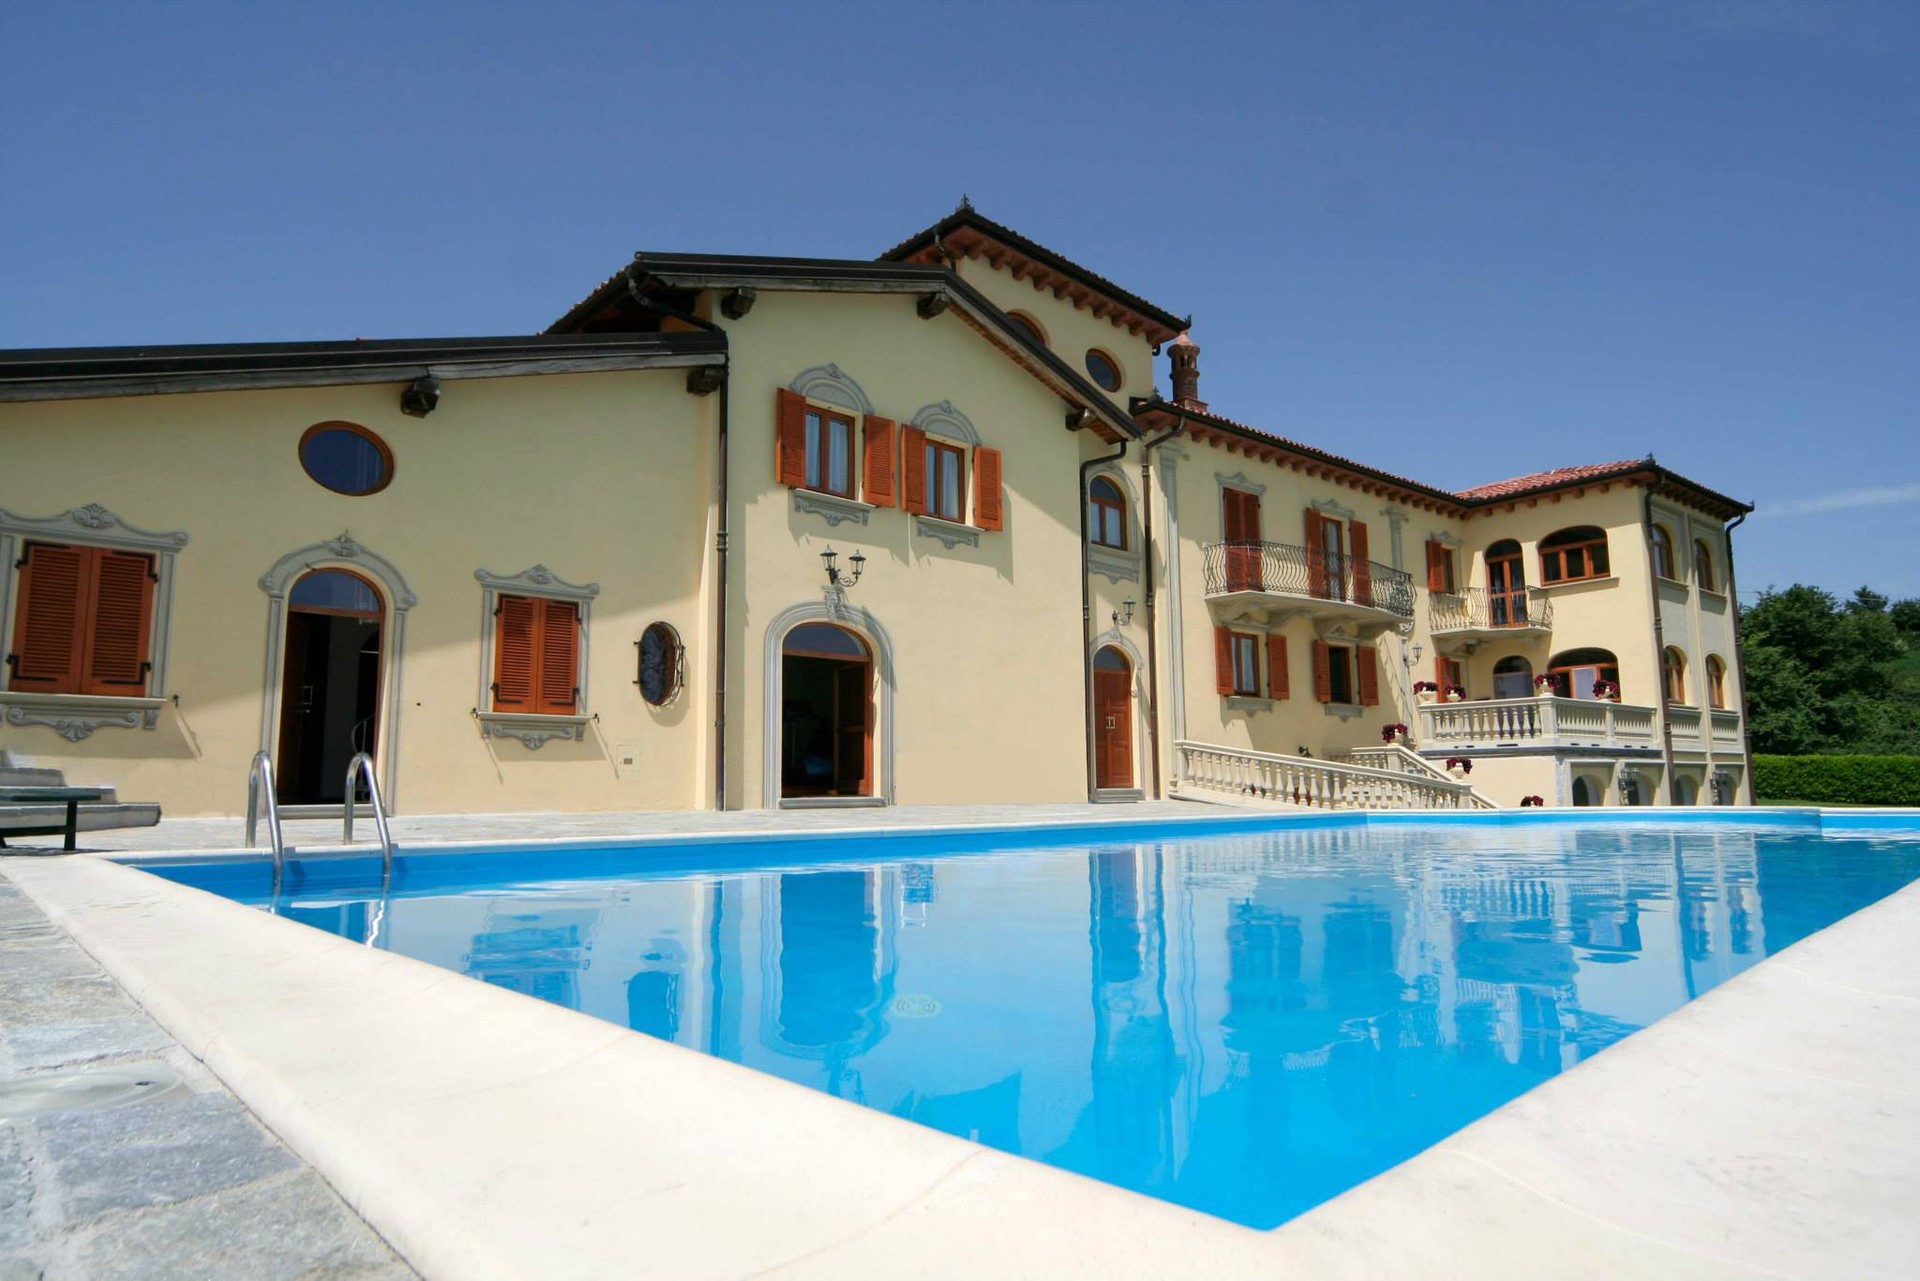 A vendre villa in zone tranquille Cuneo Piemonte